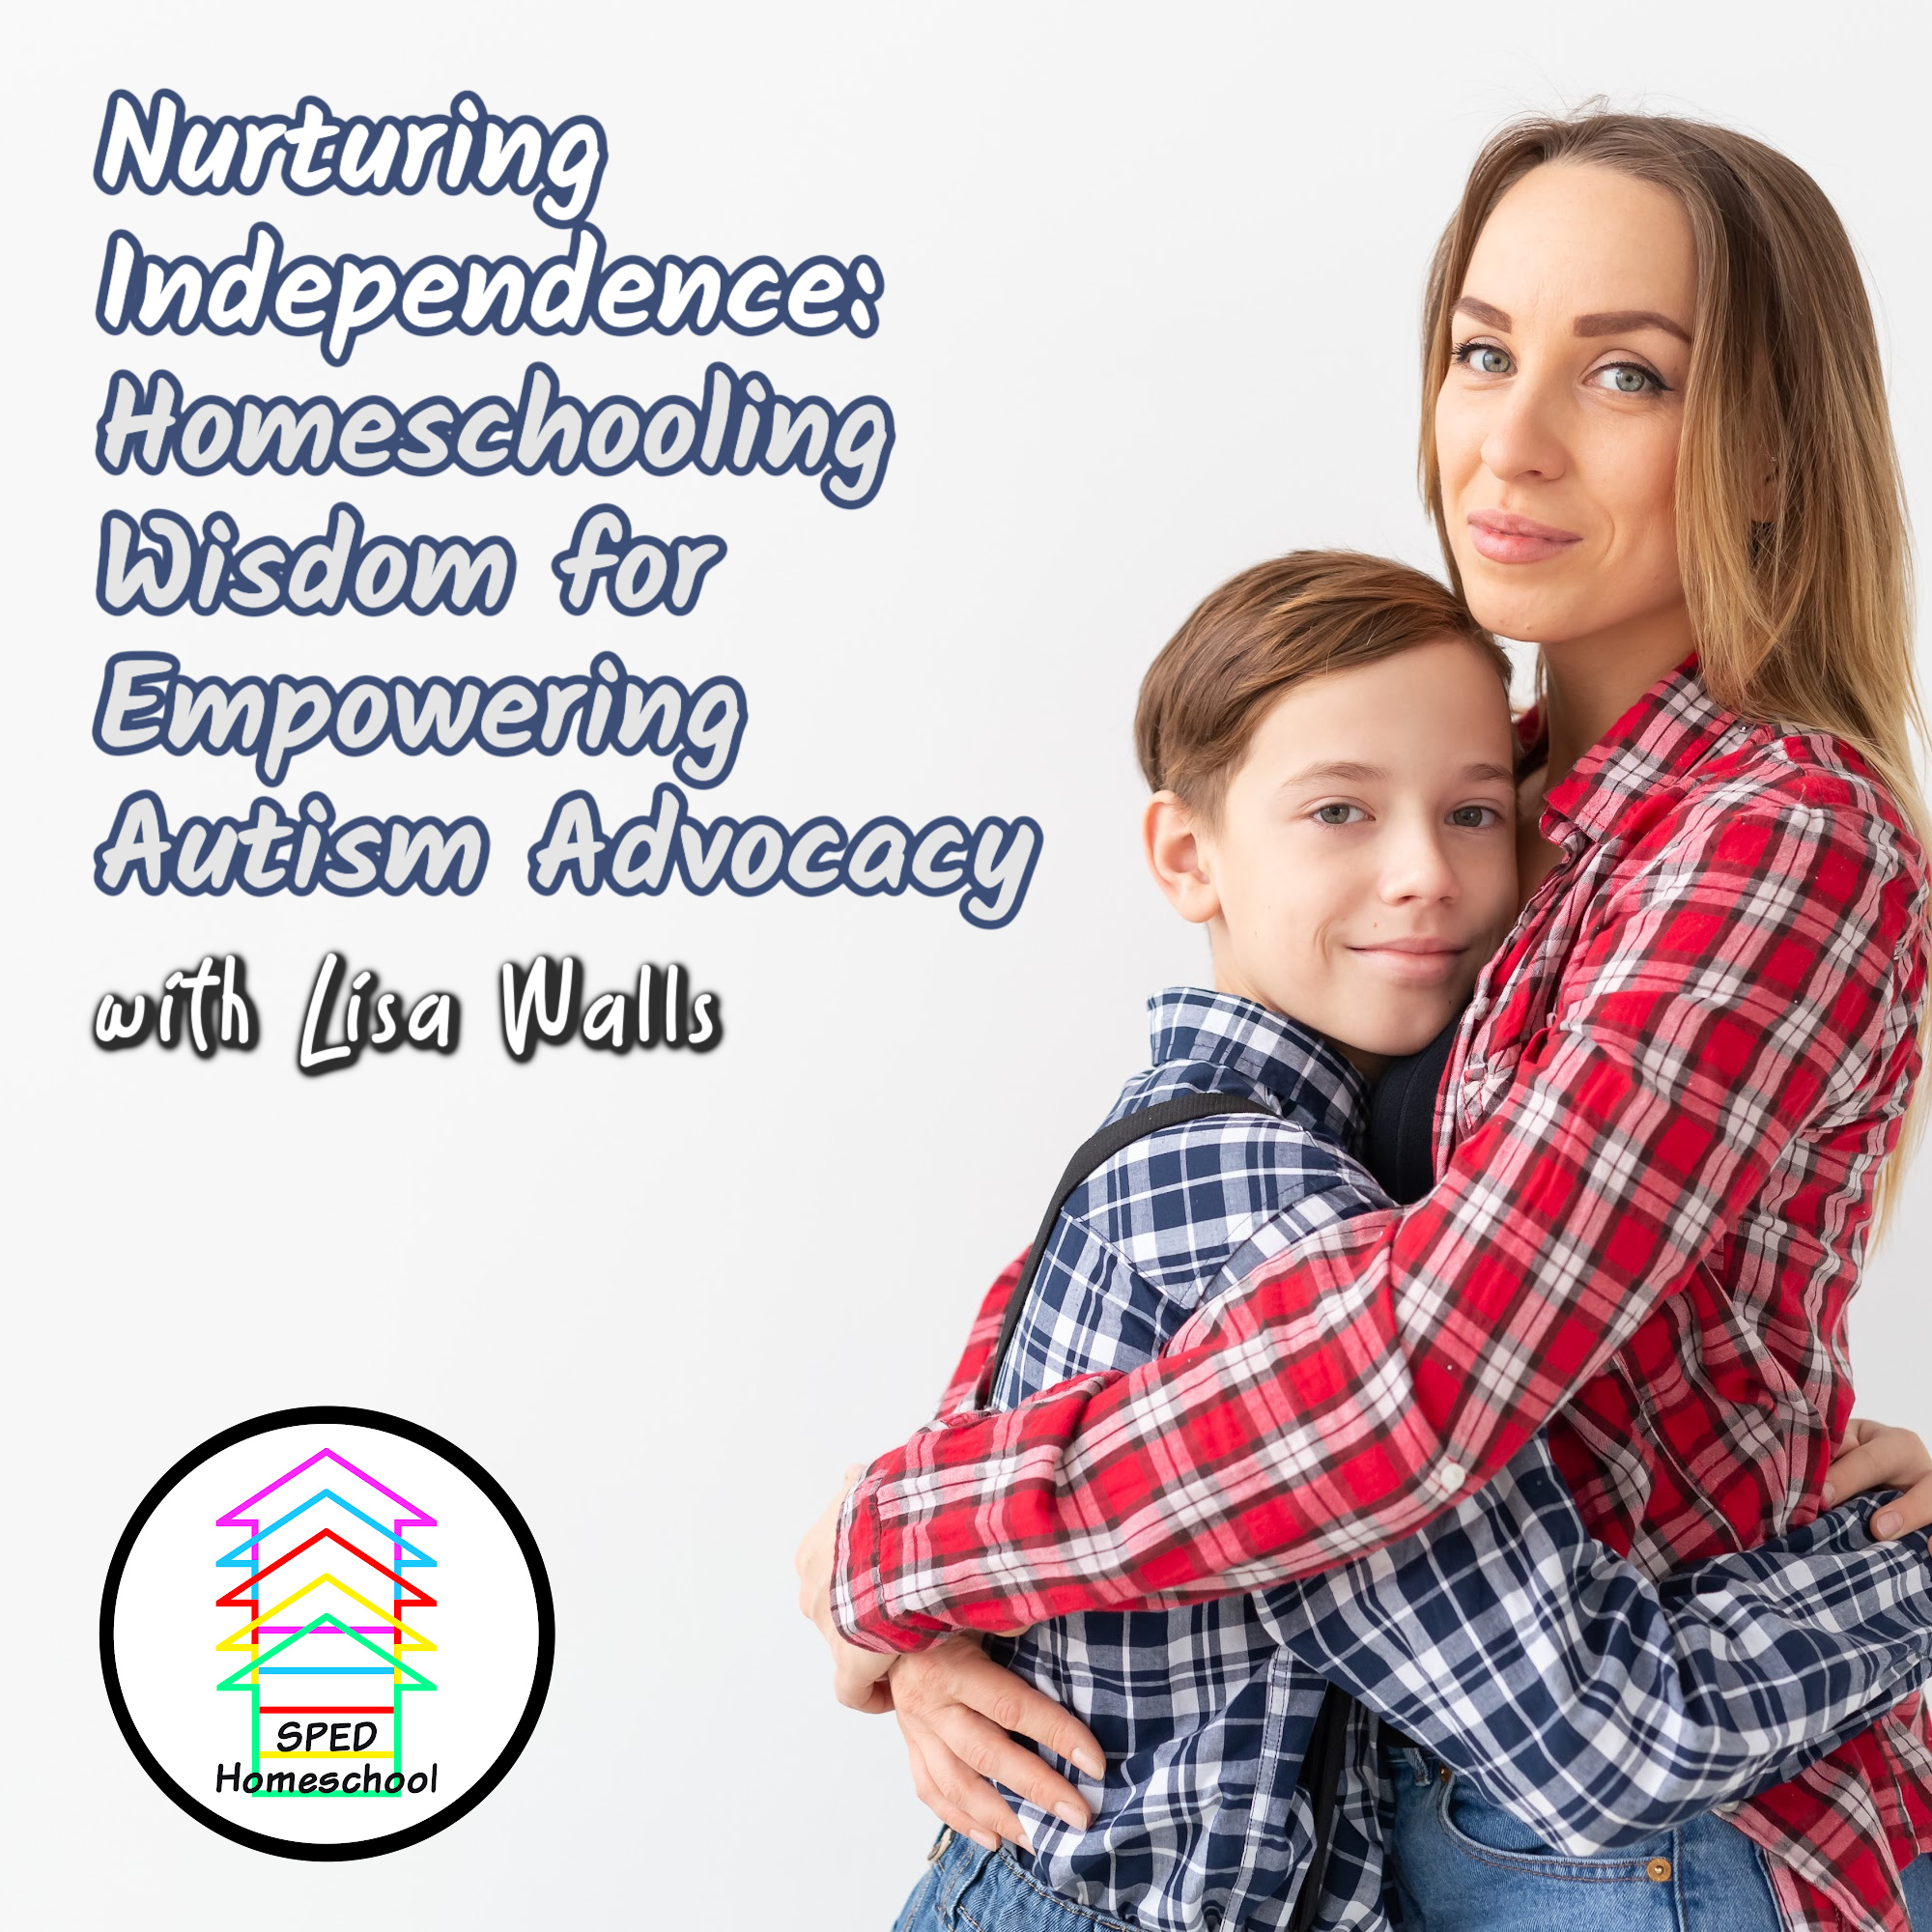 Homeschooling Wisdom for Empowering Autism Advocacy